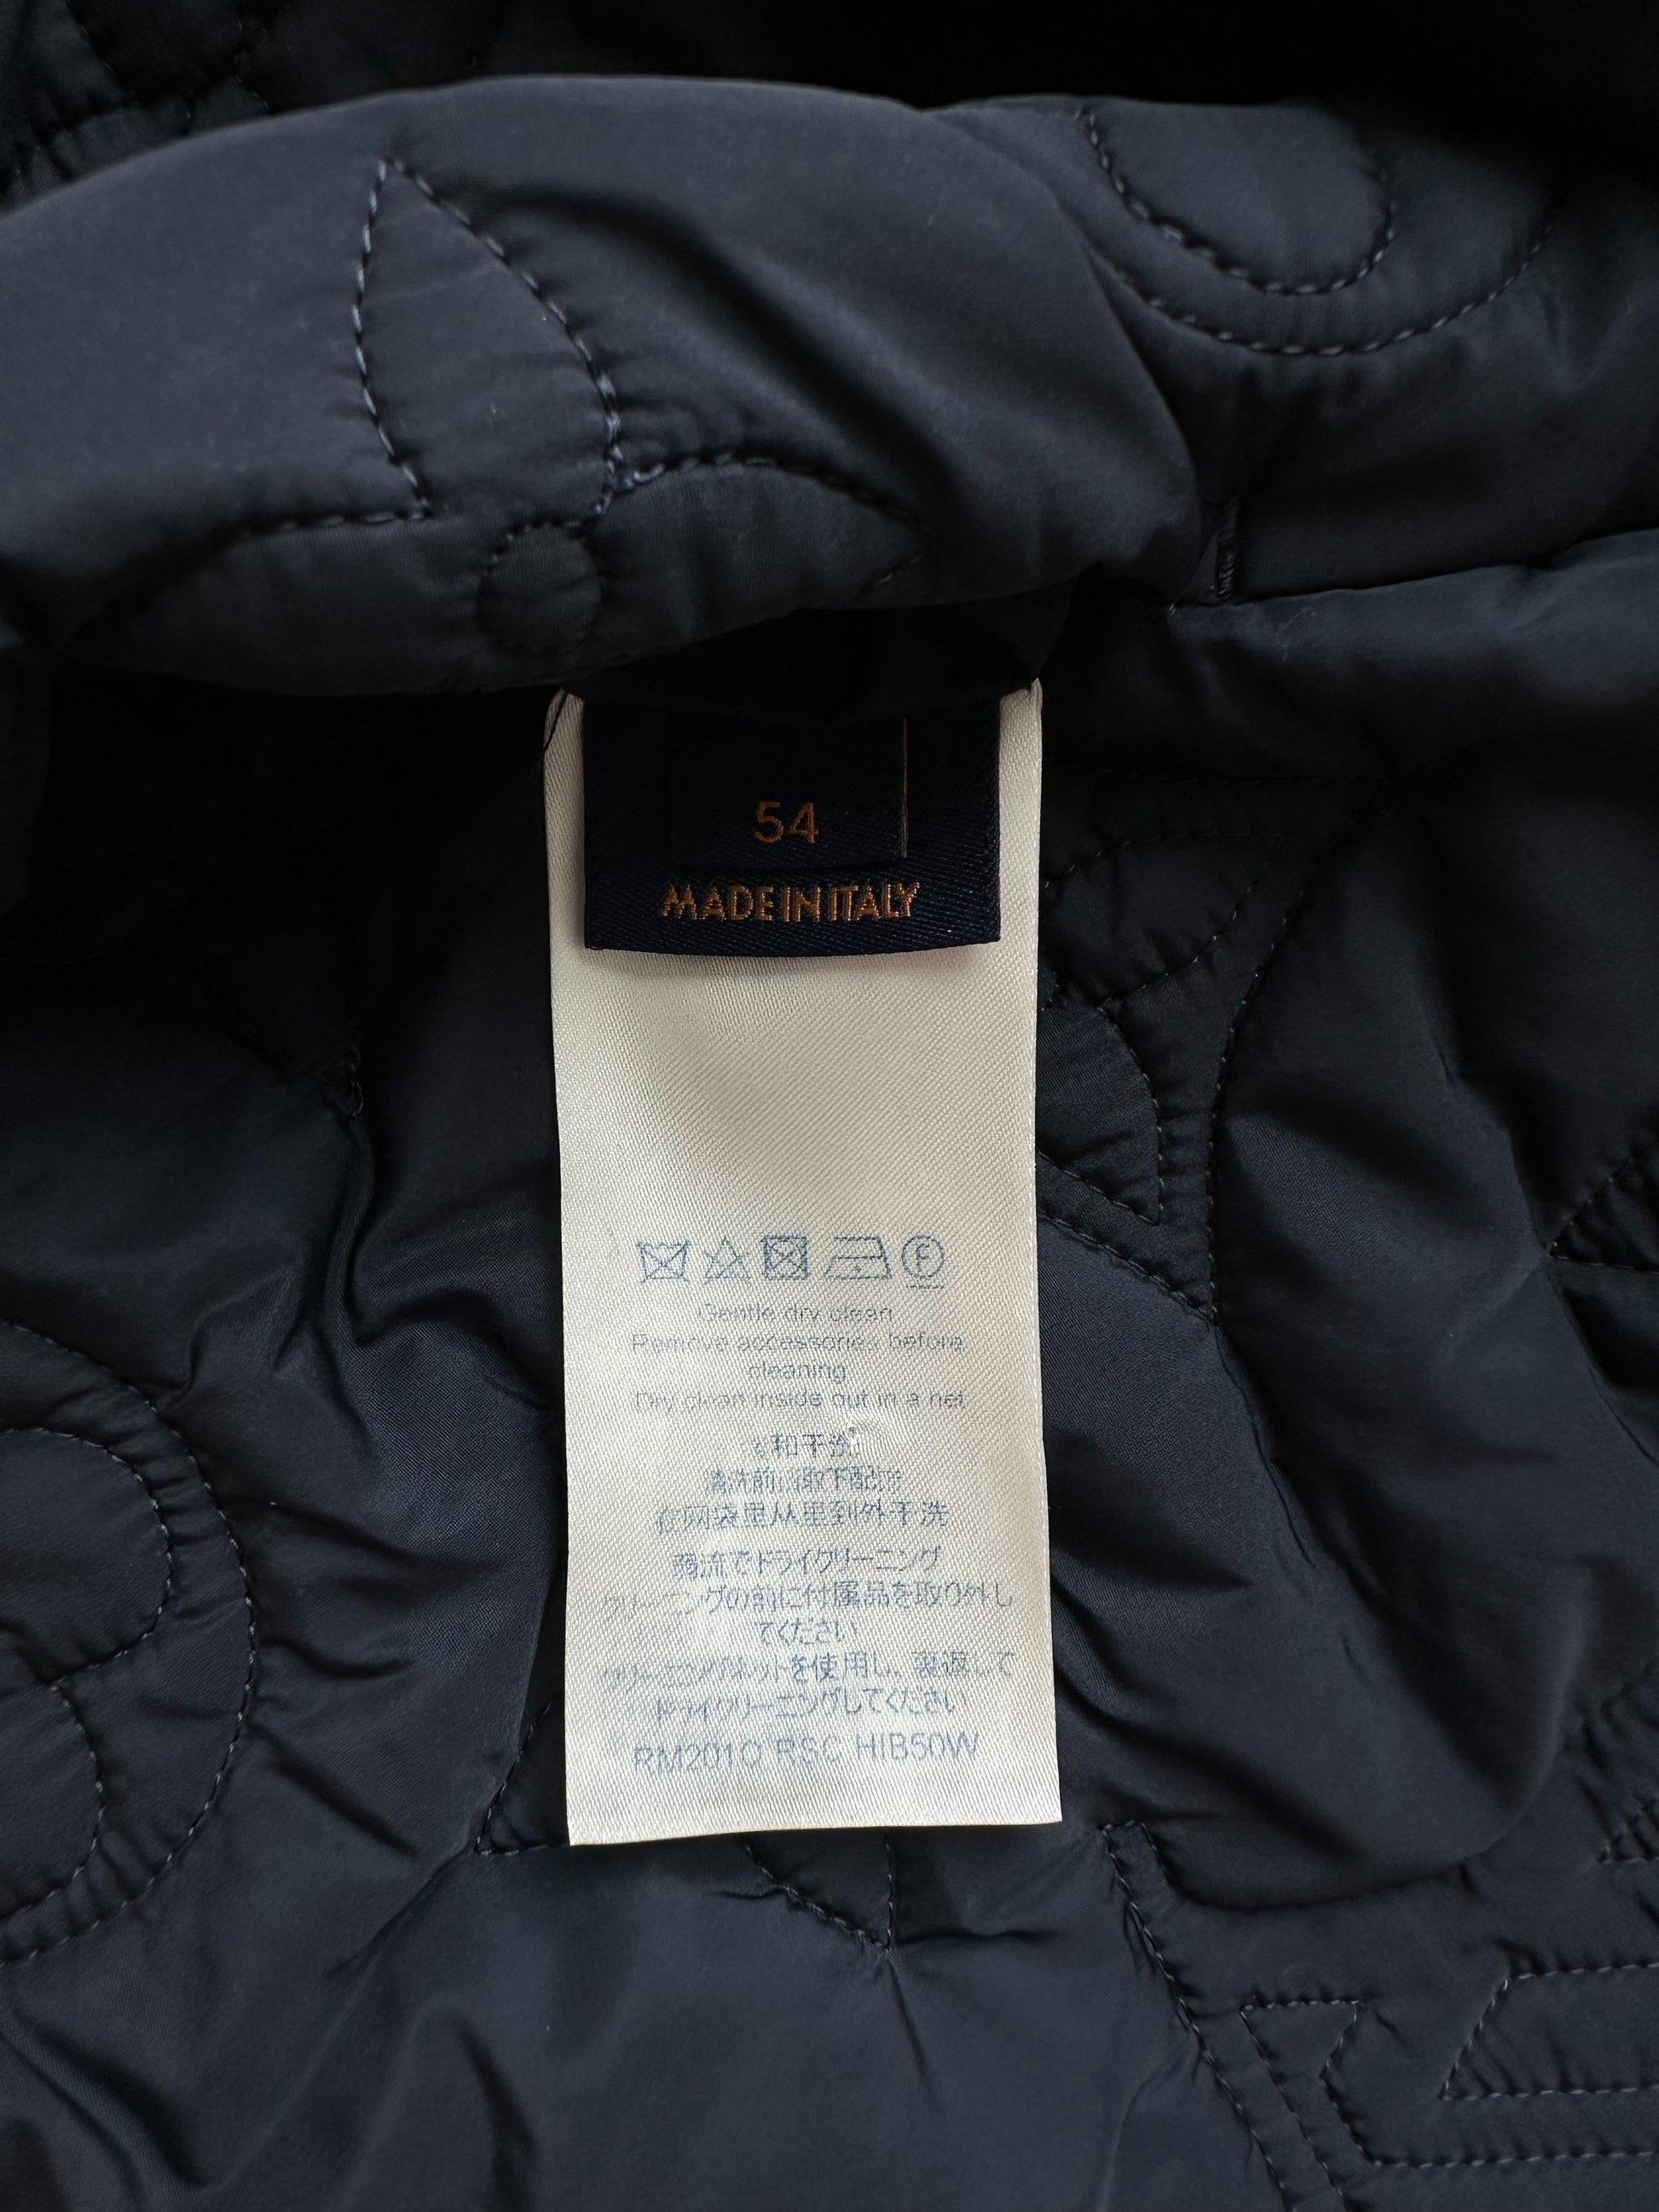 Louis Vuitton // Navy Velvet 3/4 Sleeve Zip Up Jacket – VSP